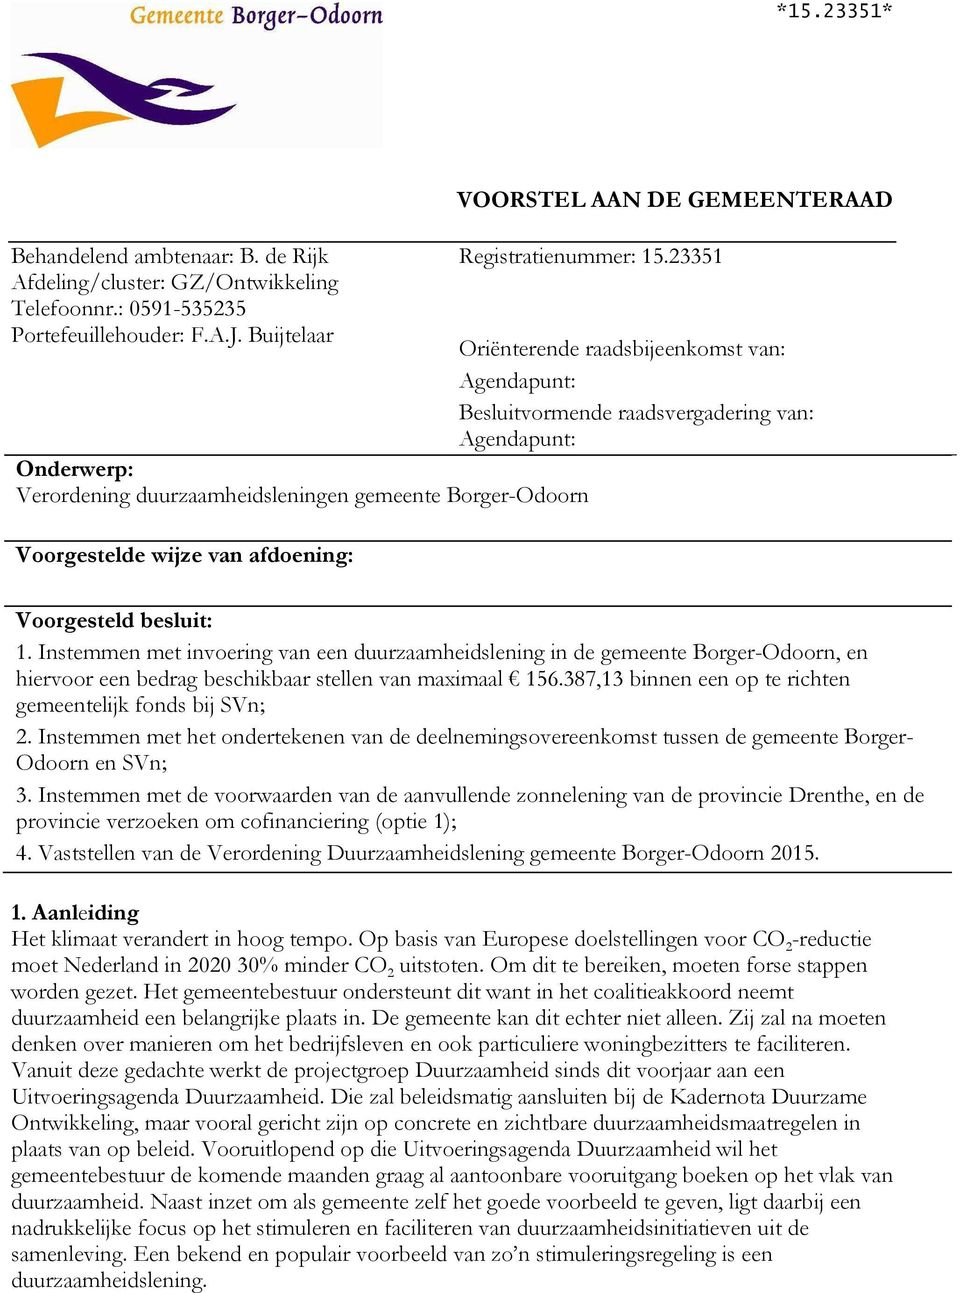 Agendapunt: Voorgesteld besluit: 1. Instemmen met invoering van een duurzaamheidslening in de gemeente Borger-Odoorn, en hiervoor een bedrag beschikbaar stellen van maximaal 156.